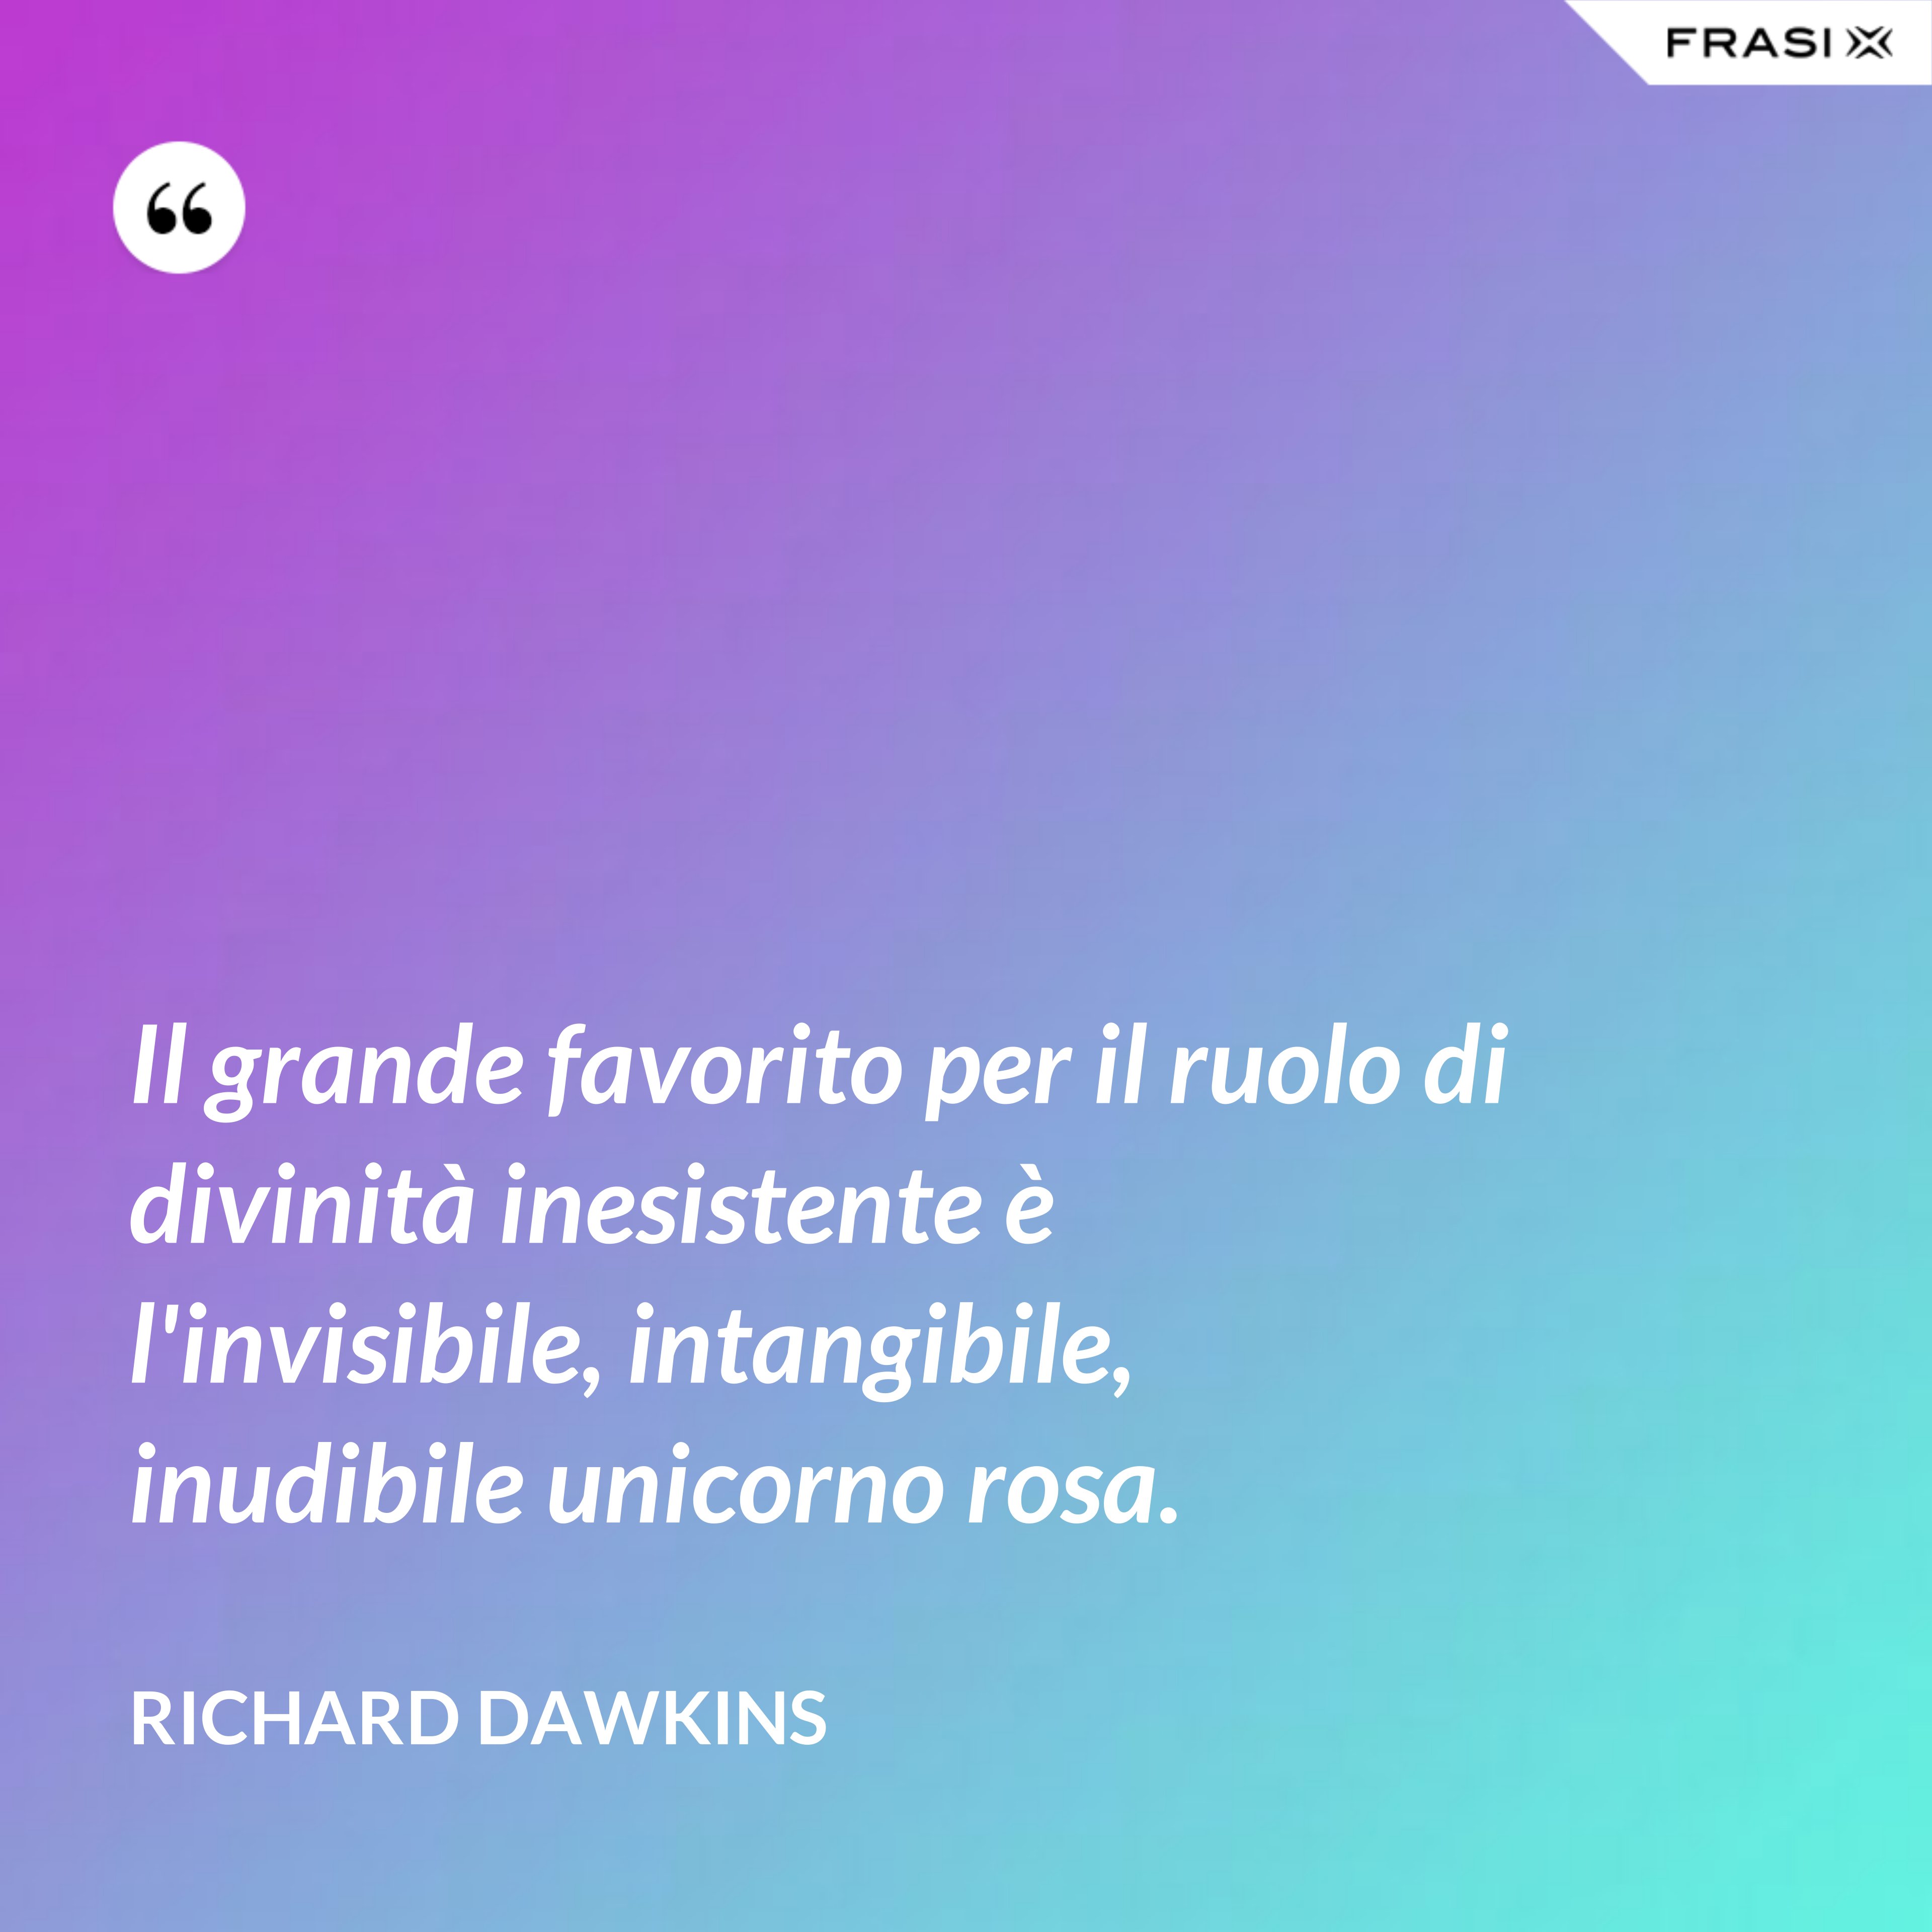 Il grande favorito per il ruolo di divinità inesistente è l'invisibile, intangibile, inudibile unicorno rosa. - Richard Dawkins